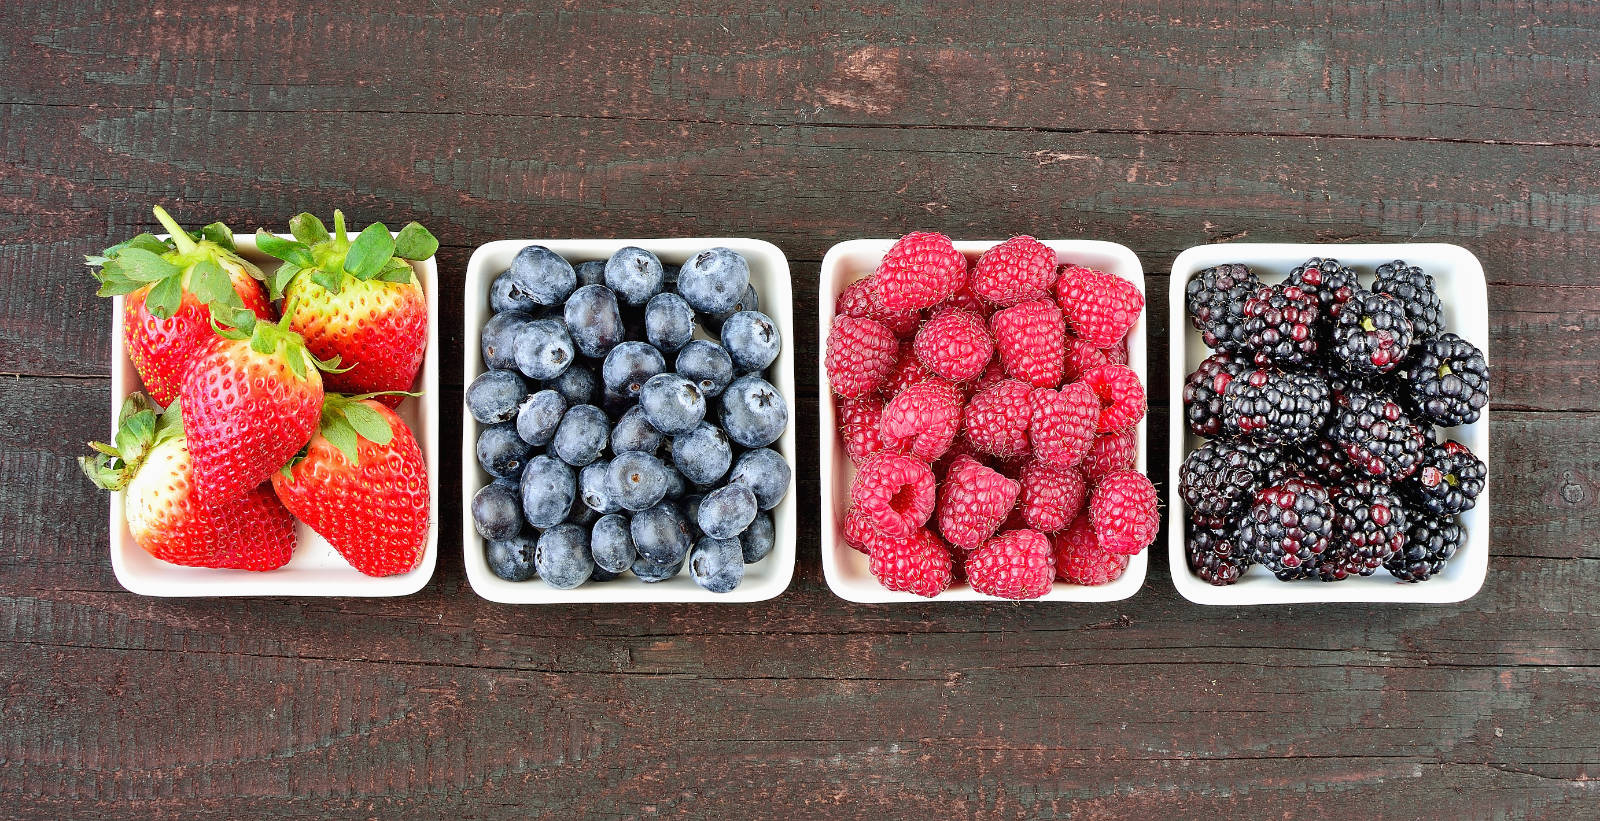 Mix,of,strawberries,,blueberries,,blackberries,and,raspberries,fruit,on,wood